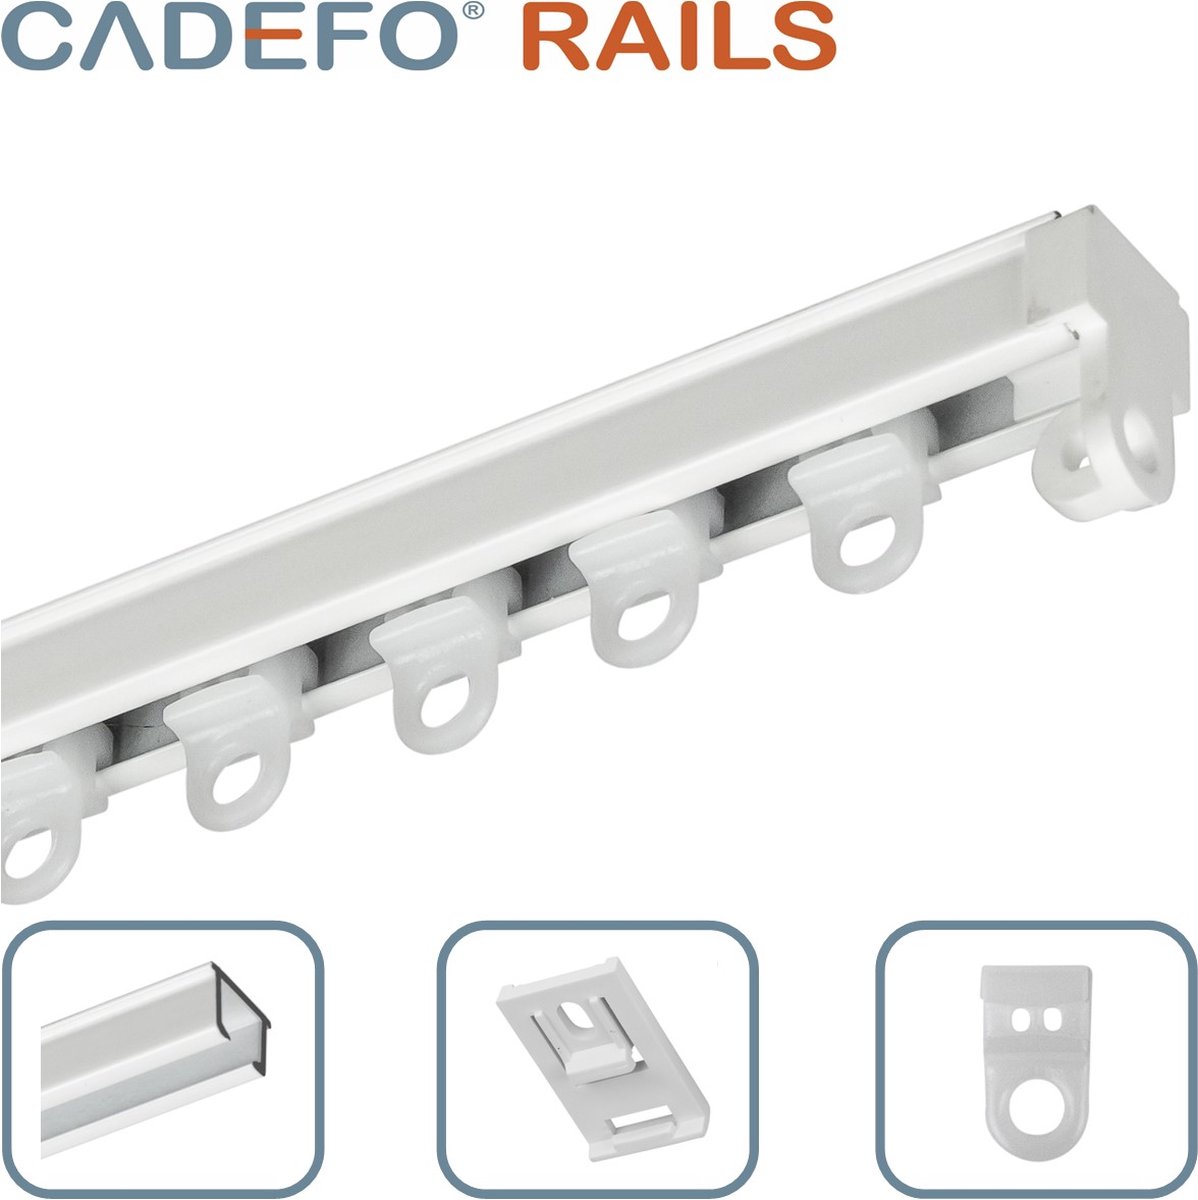 CADEFO RAILS (351 - 400 cm) Gordijnrails - Compleet op maat! - UIT 1 STUK - Leverbaar tot 6 meter - Plafondbevestiging - Lengte 366 cm